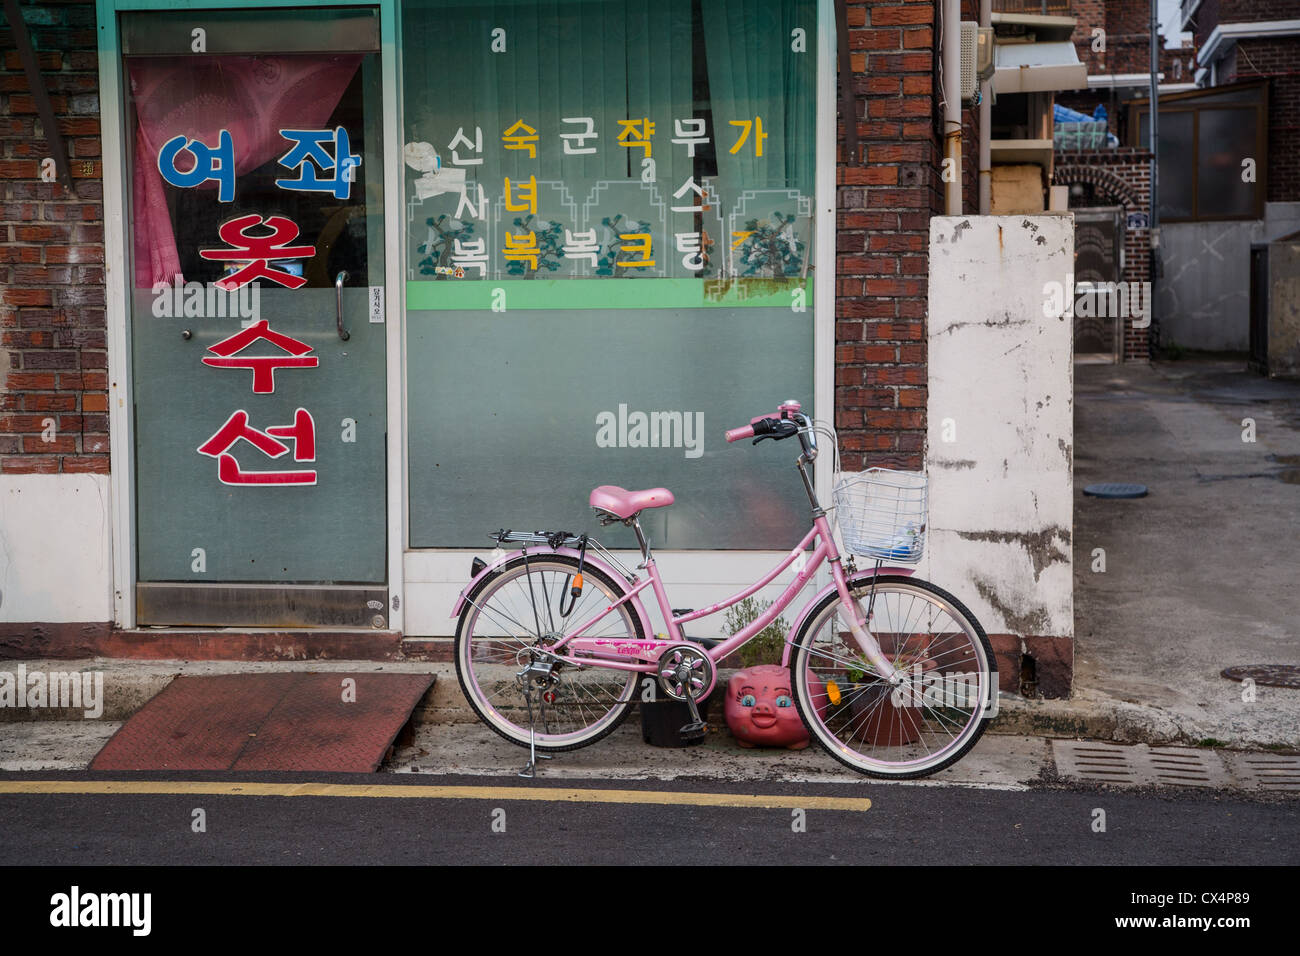 Store front sud-coréen - Vélo rose en face d'une ruelle Banque D'Images